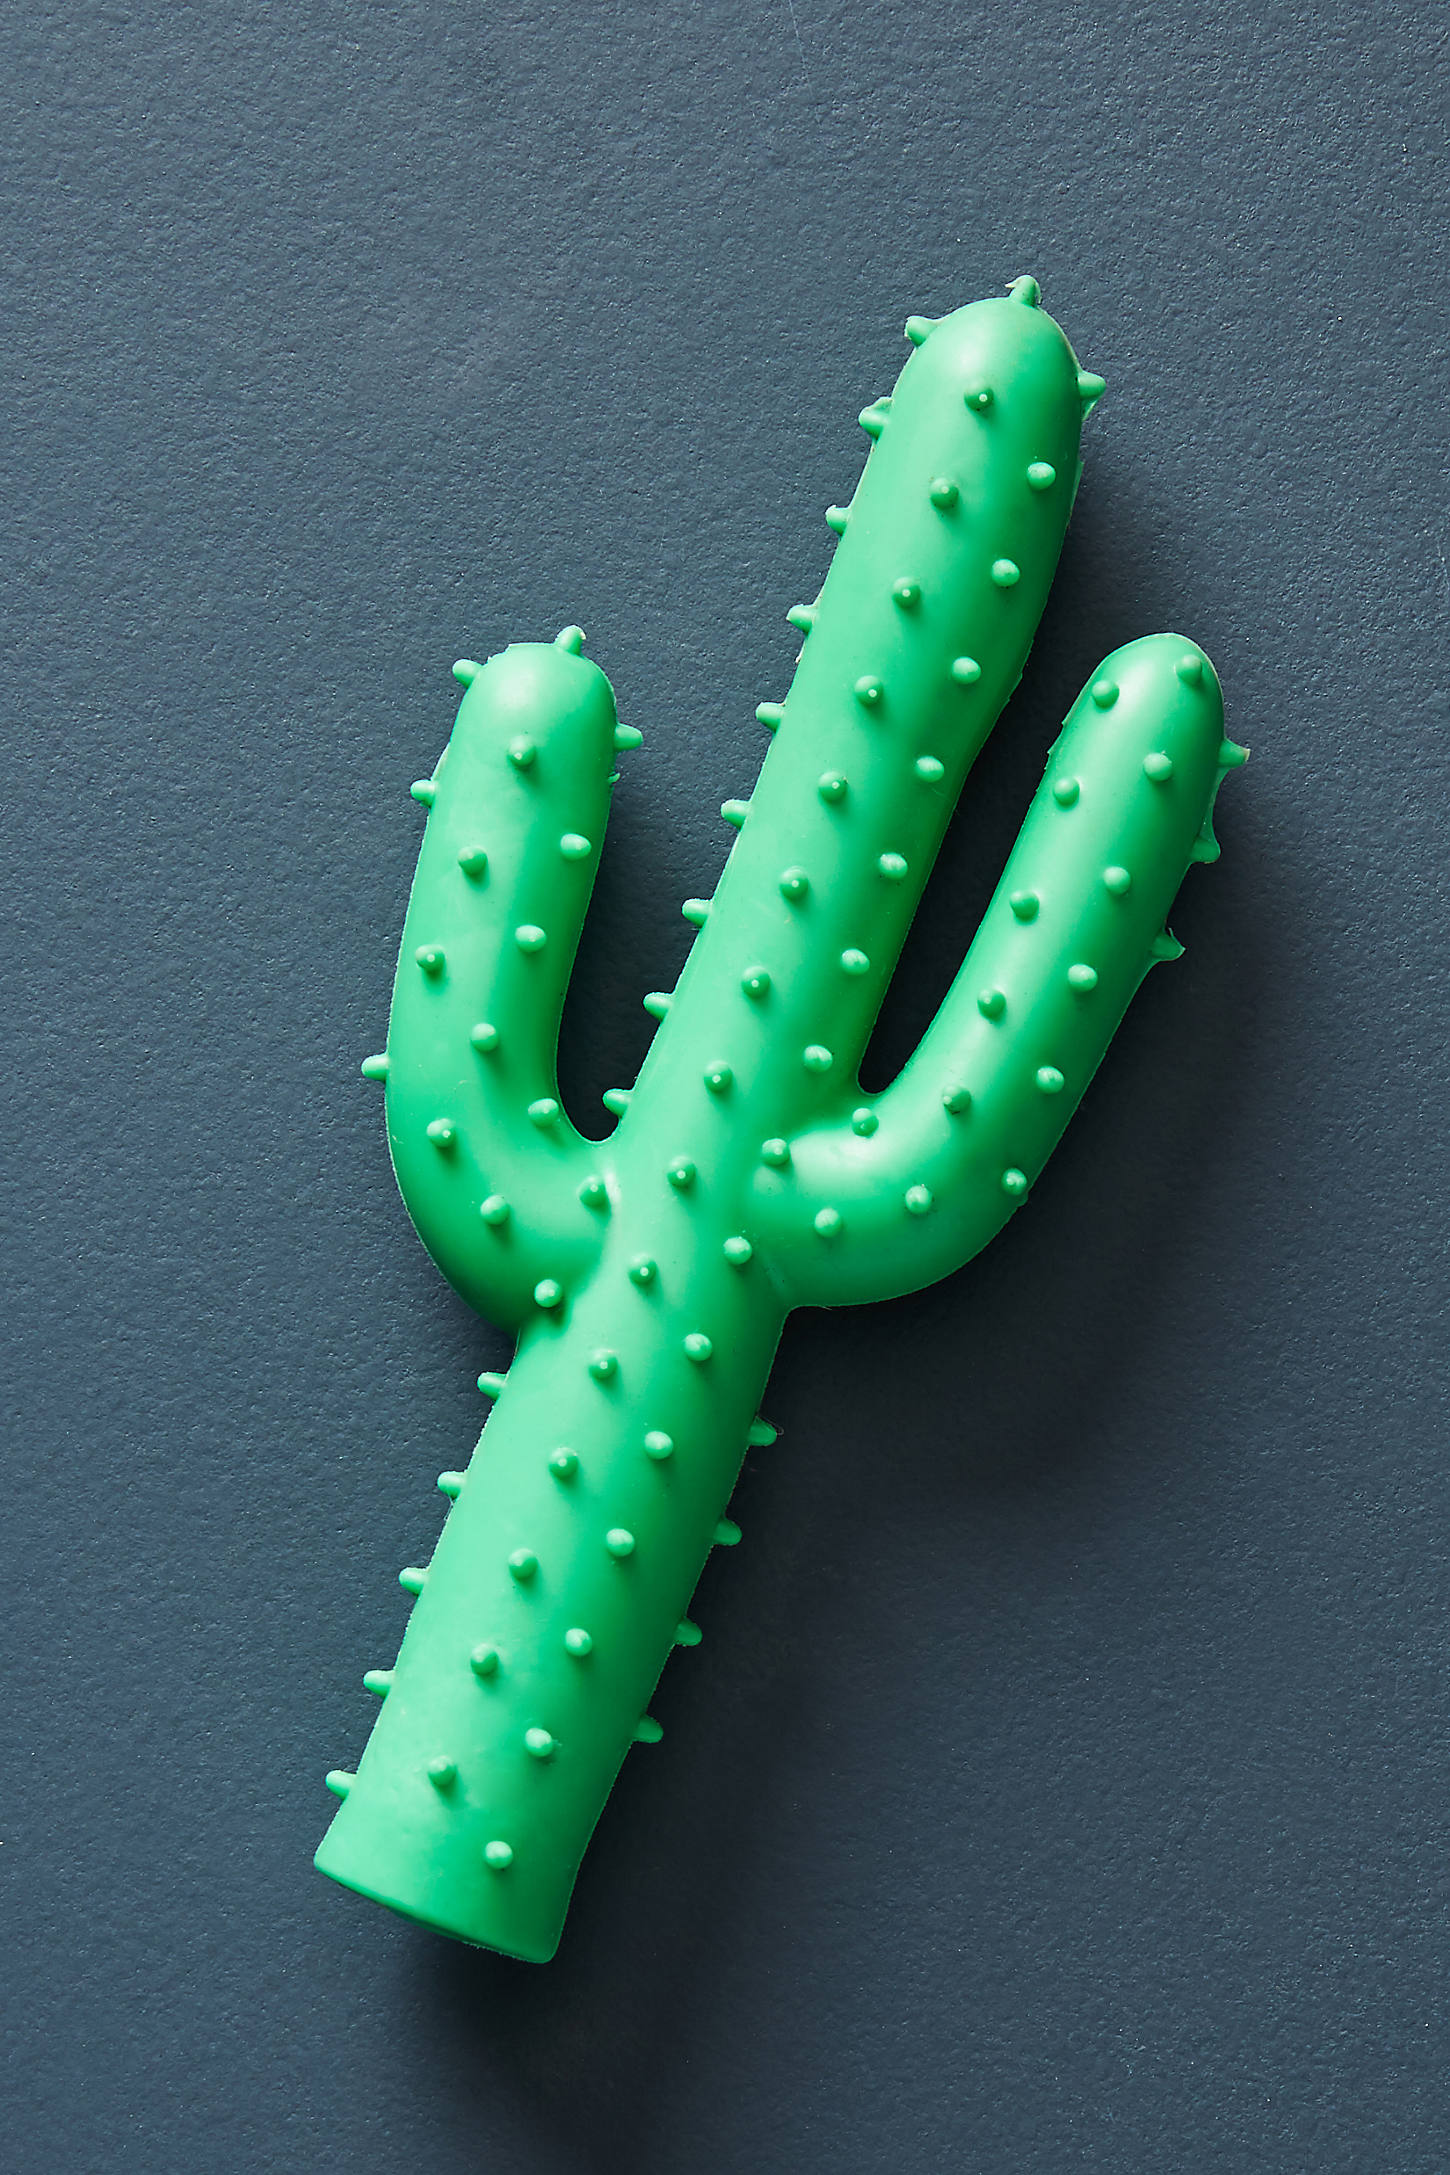 Cactus Dog Toy